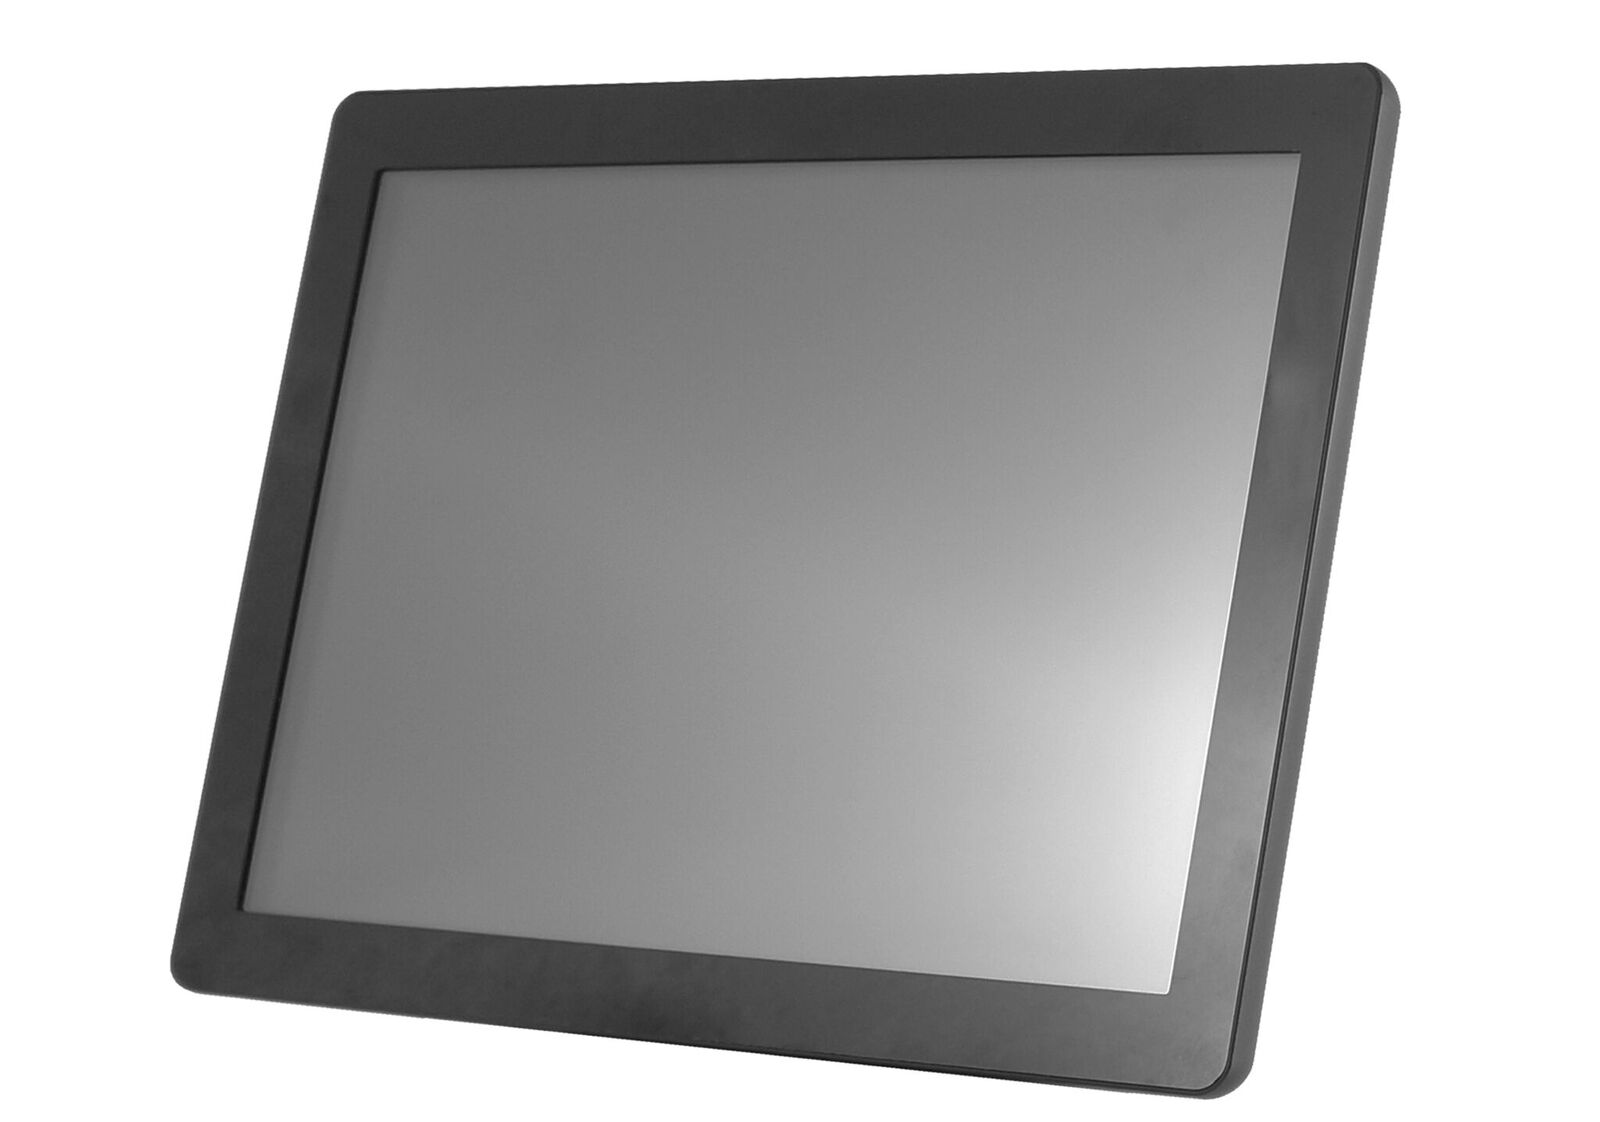 8'' Glass display - 800x600, 250nt, VGA